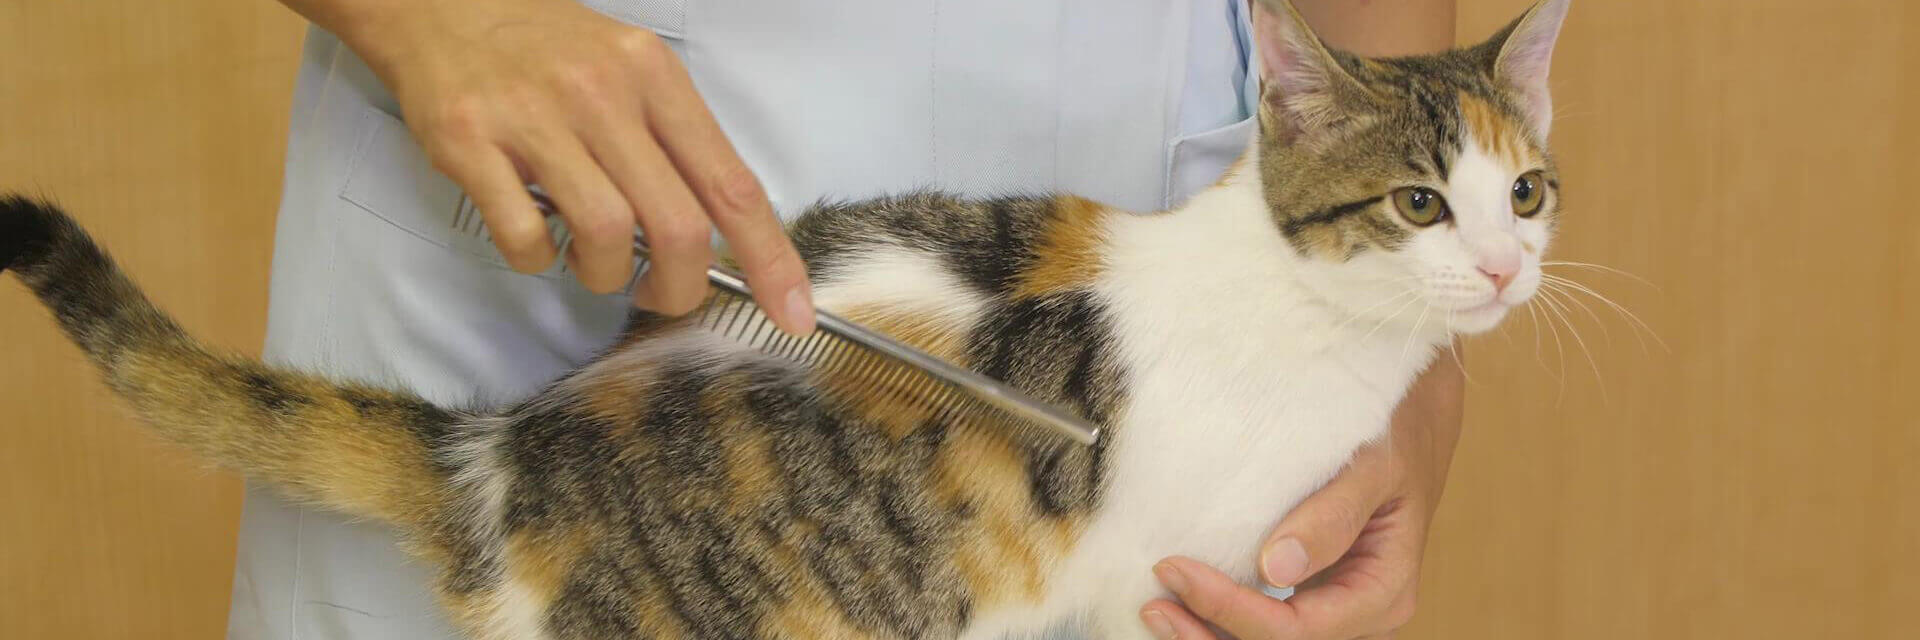 動画でわかる】猫のブラッシングの手順をプロが解説。抜け毛を除去し